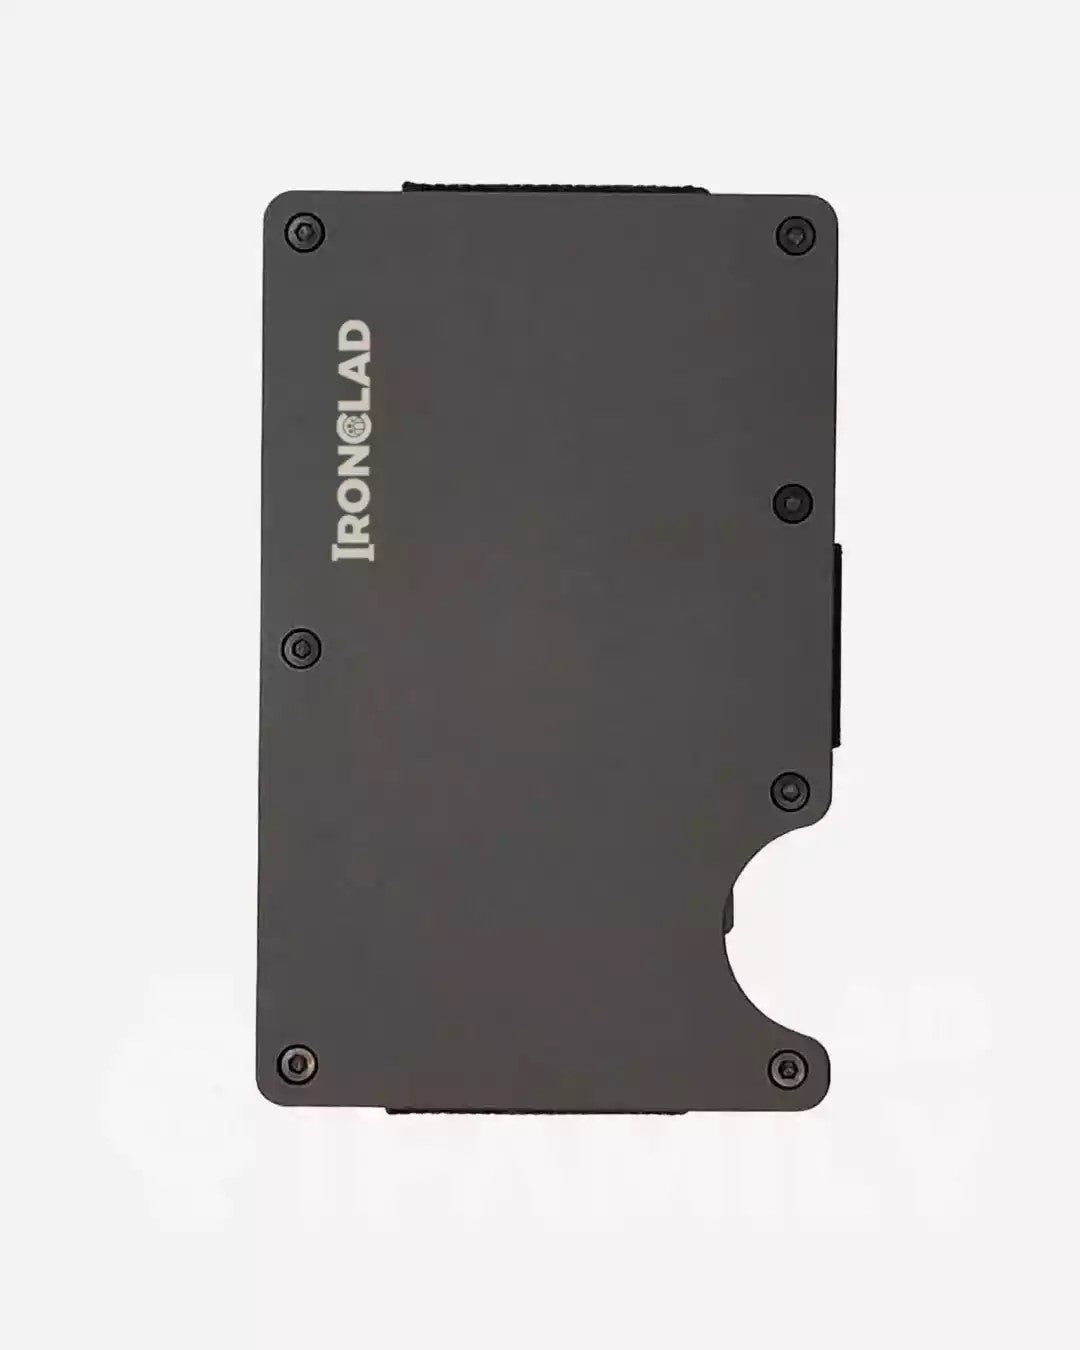 Black matte metal RFID blocking wallet with Ironland branding